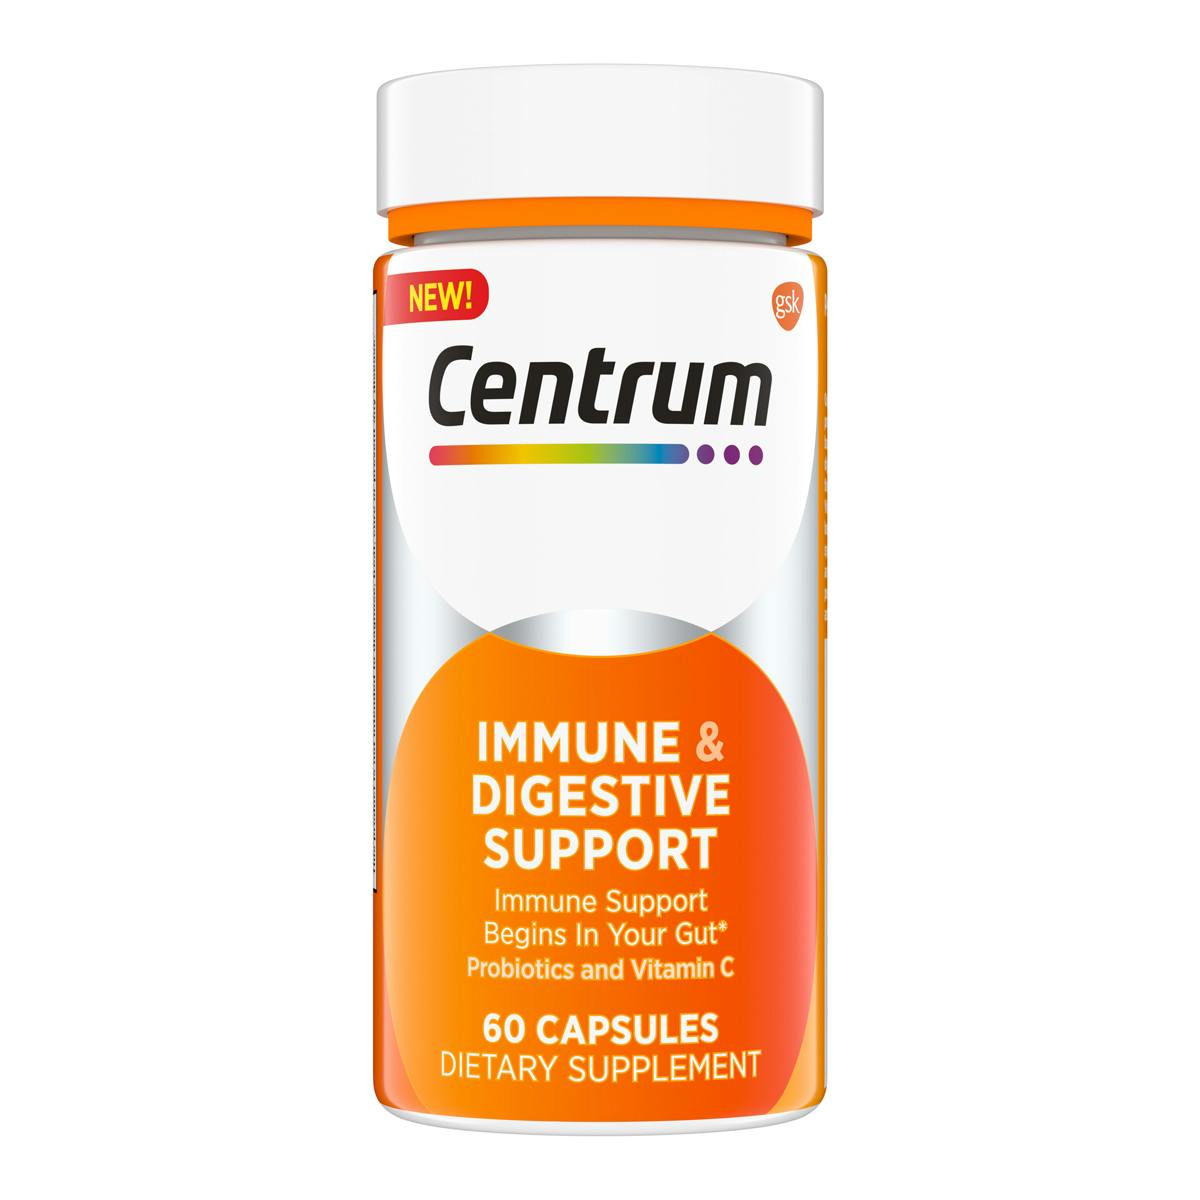 Box of Centrum Immune & Digestive Support Capsule 